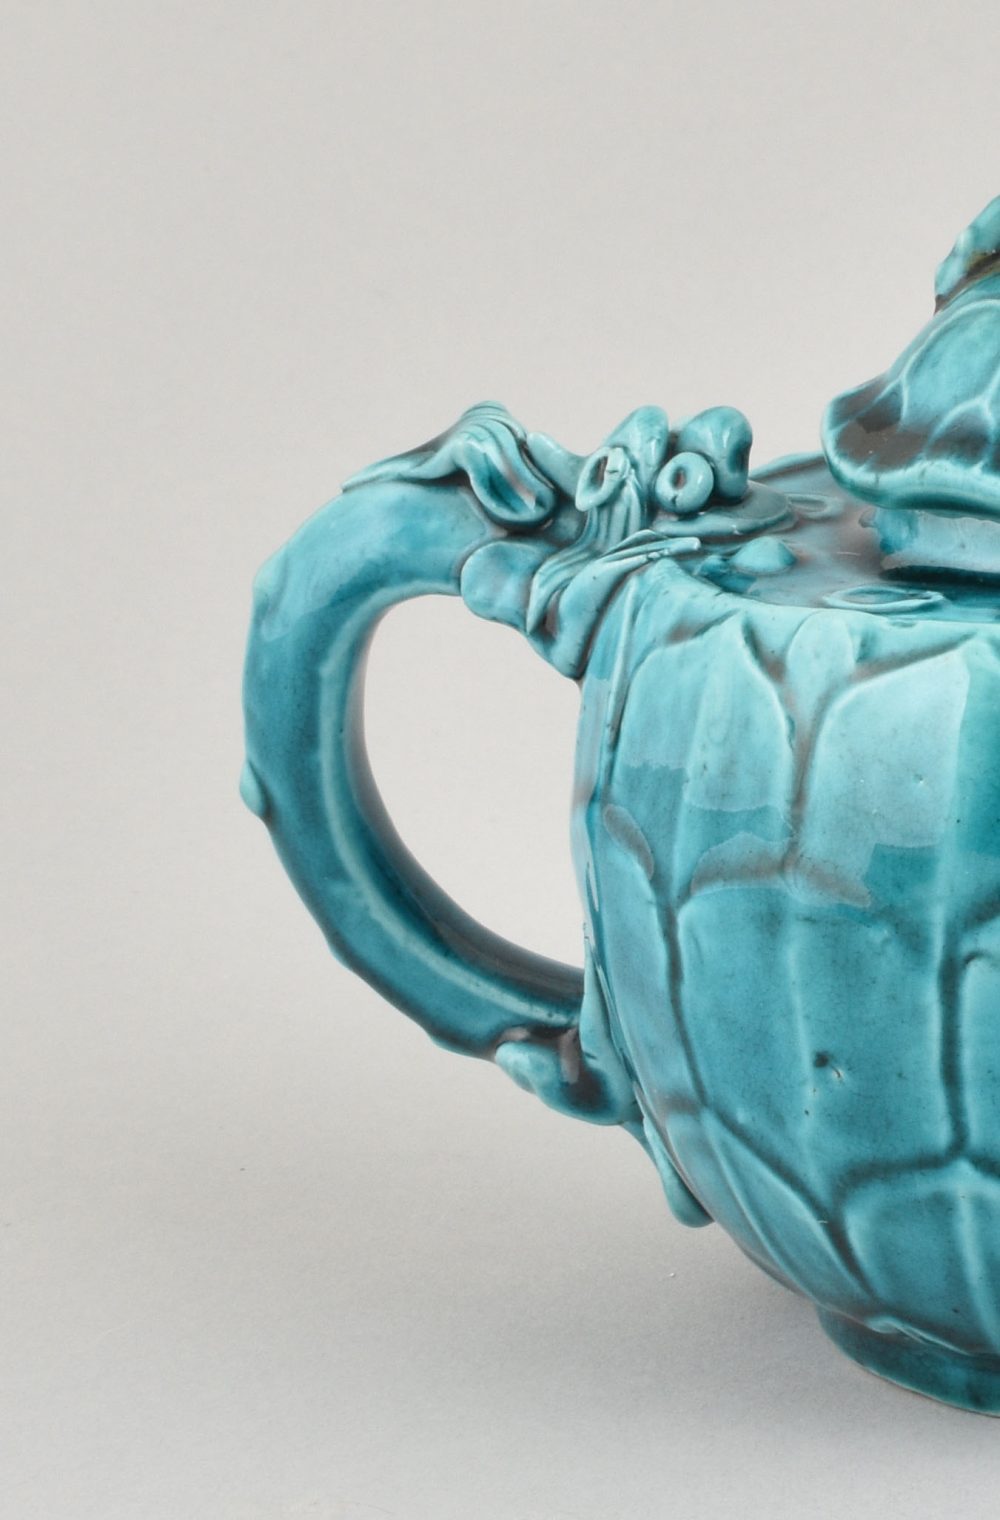 Biscuit de porcelaine émaillé turquoise Kangxi (1662-1722), Chine